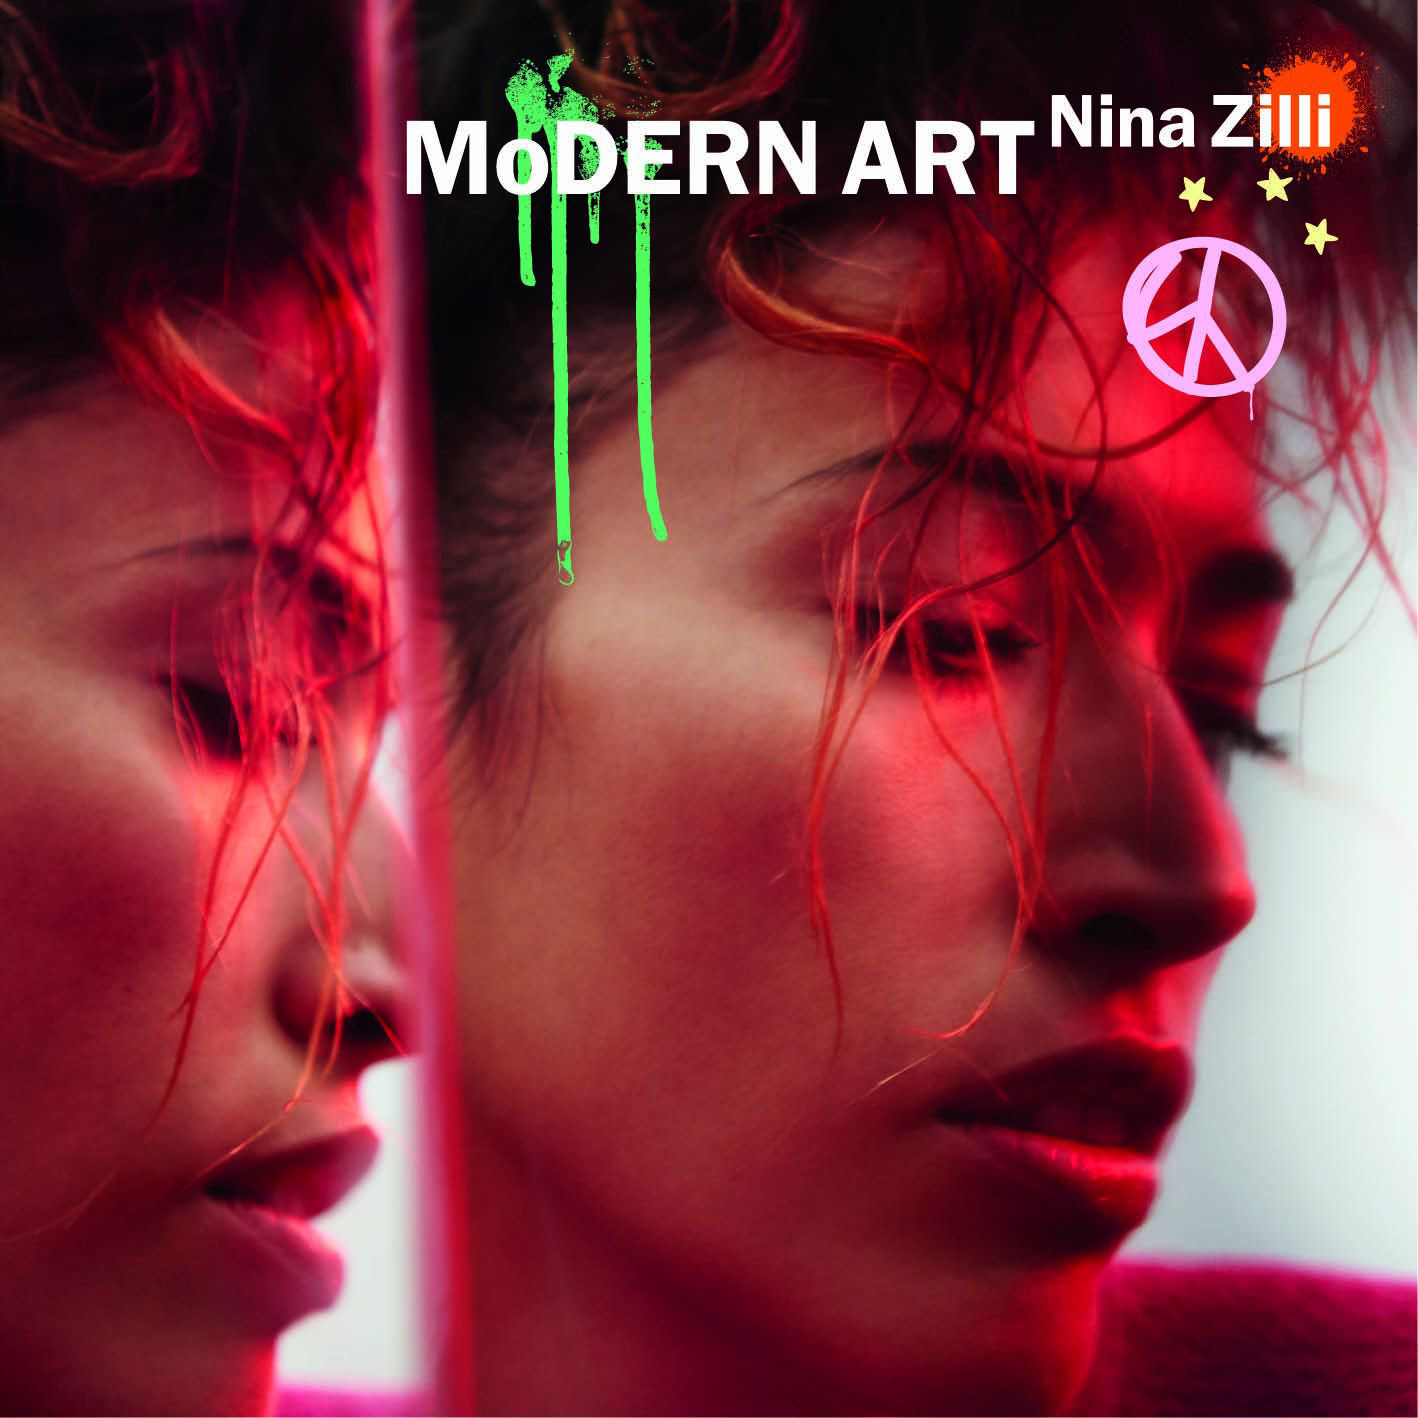 NINA ZILLI: "MODERN ART" il nuovo album in arrivo l'1 settembre